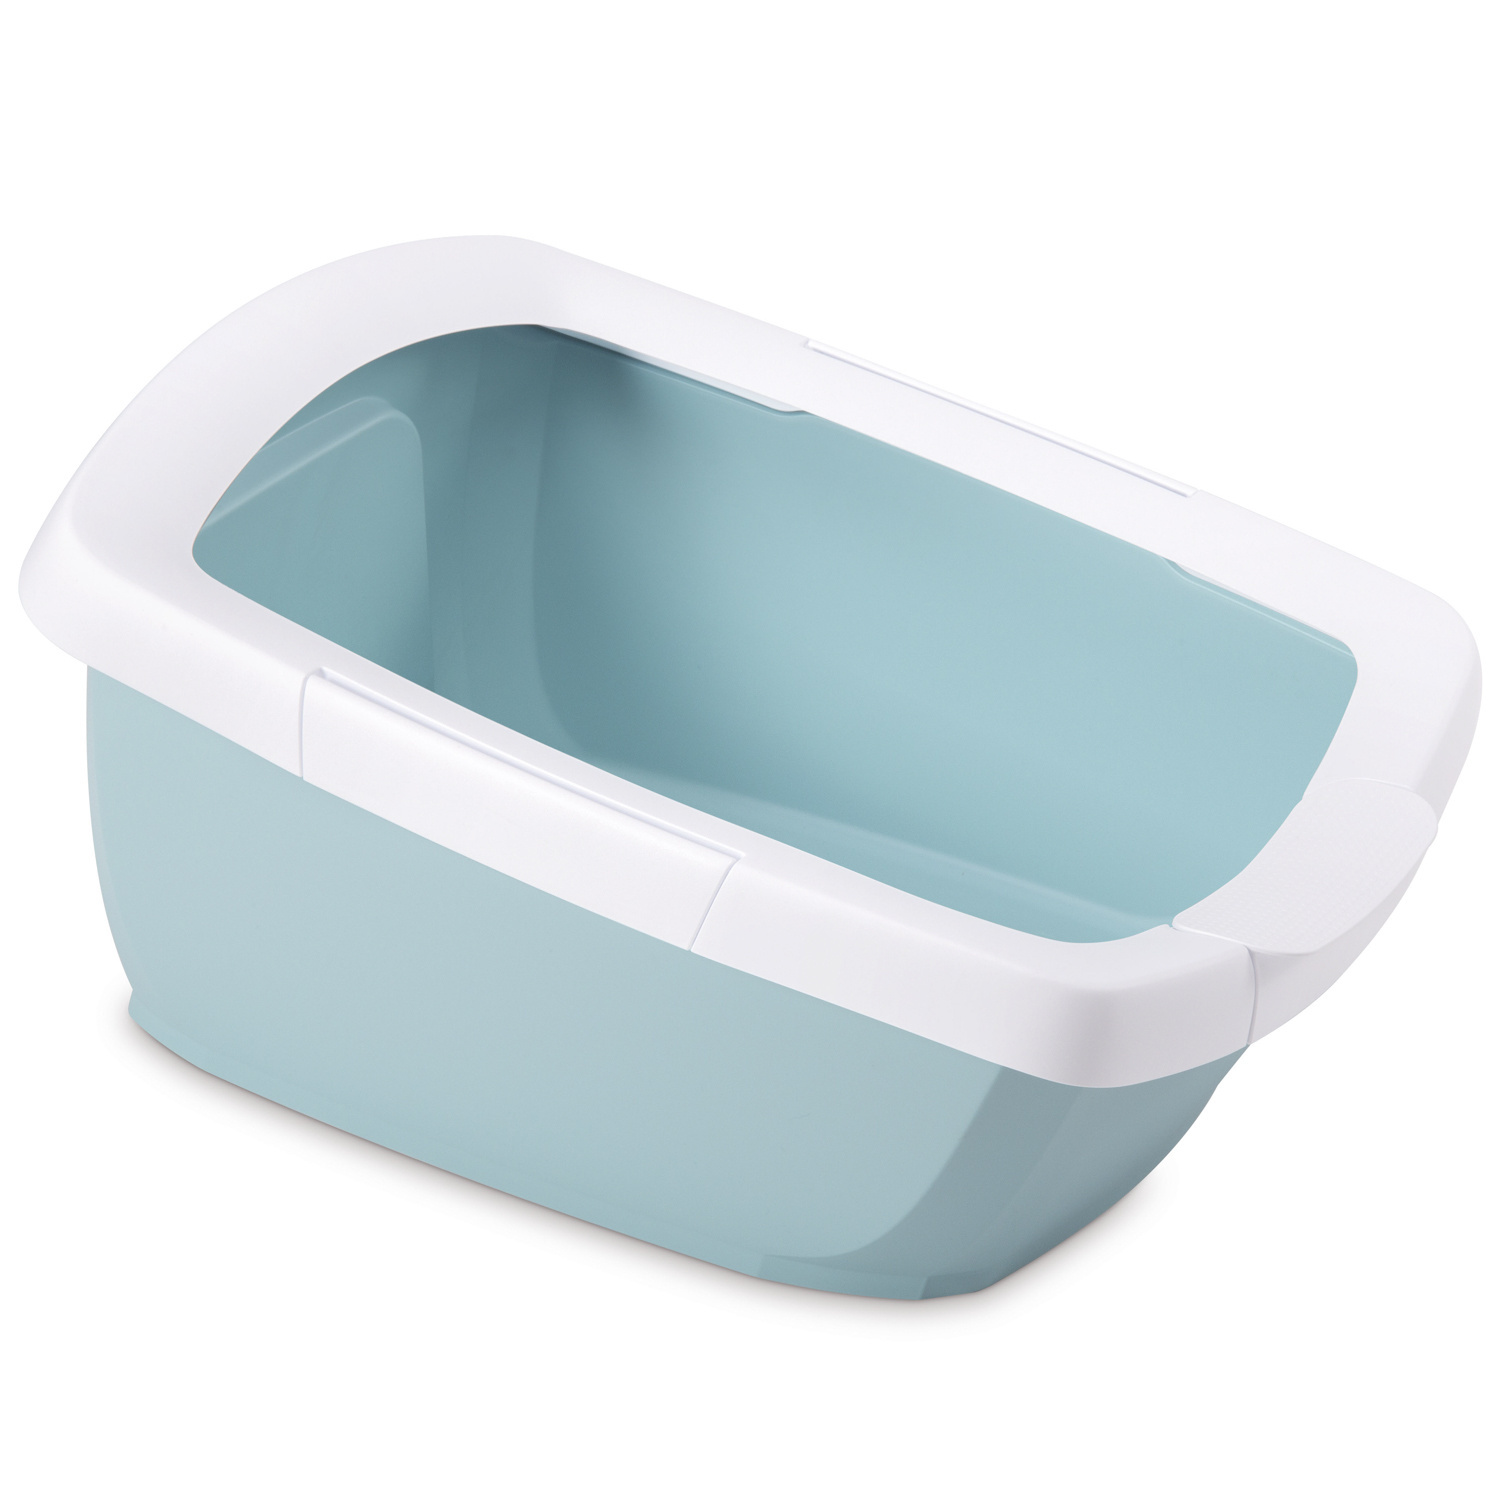 IMAC IMAC туалет-лоток для кошек с высокими бортами, пастельно голубой (1,73 кг)